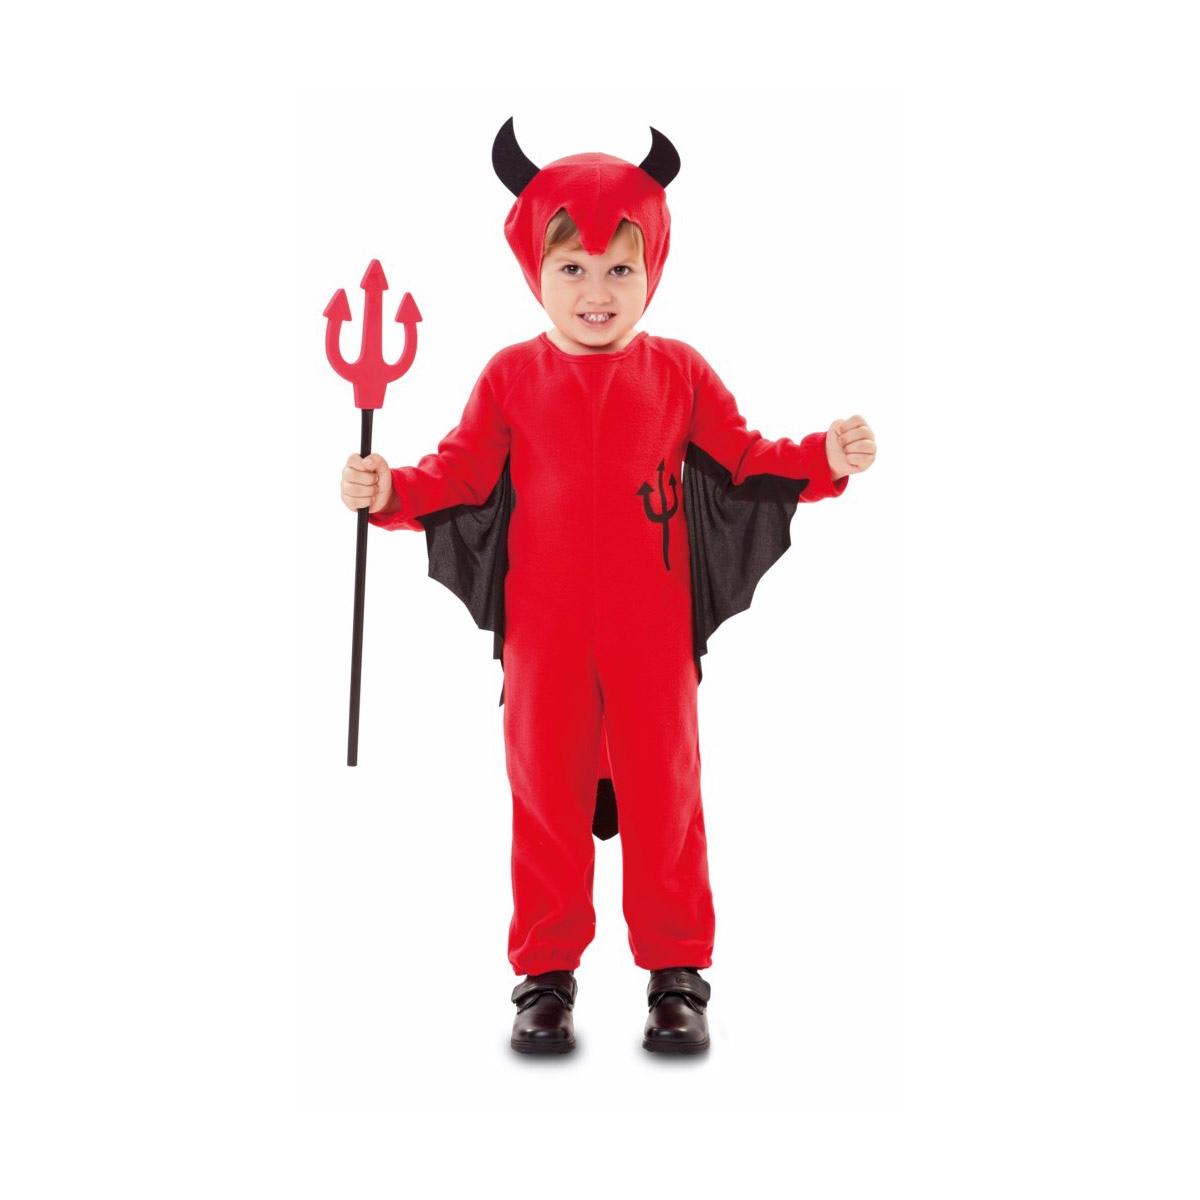 Carnevale: Costume Diavoletto Bambino in Offerta su